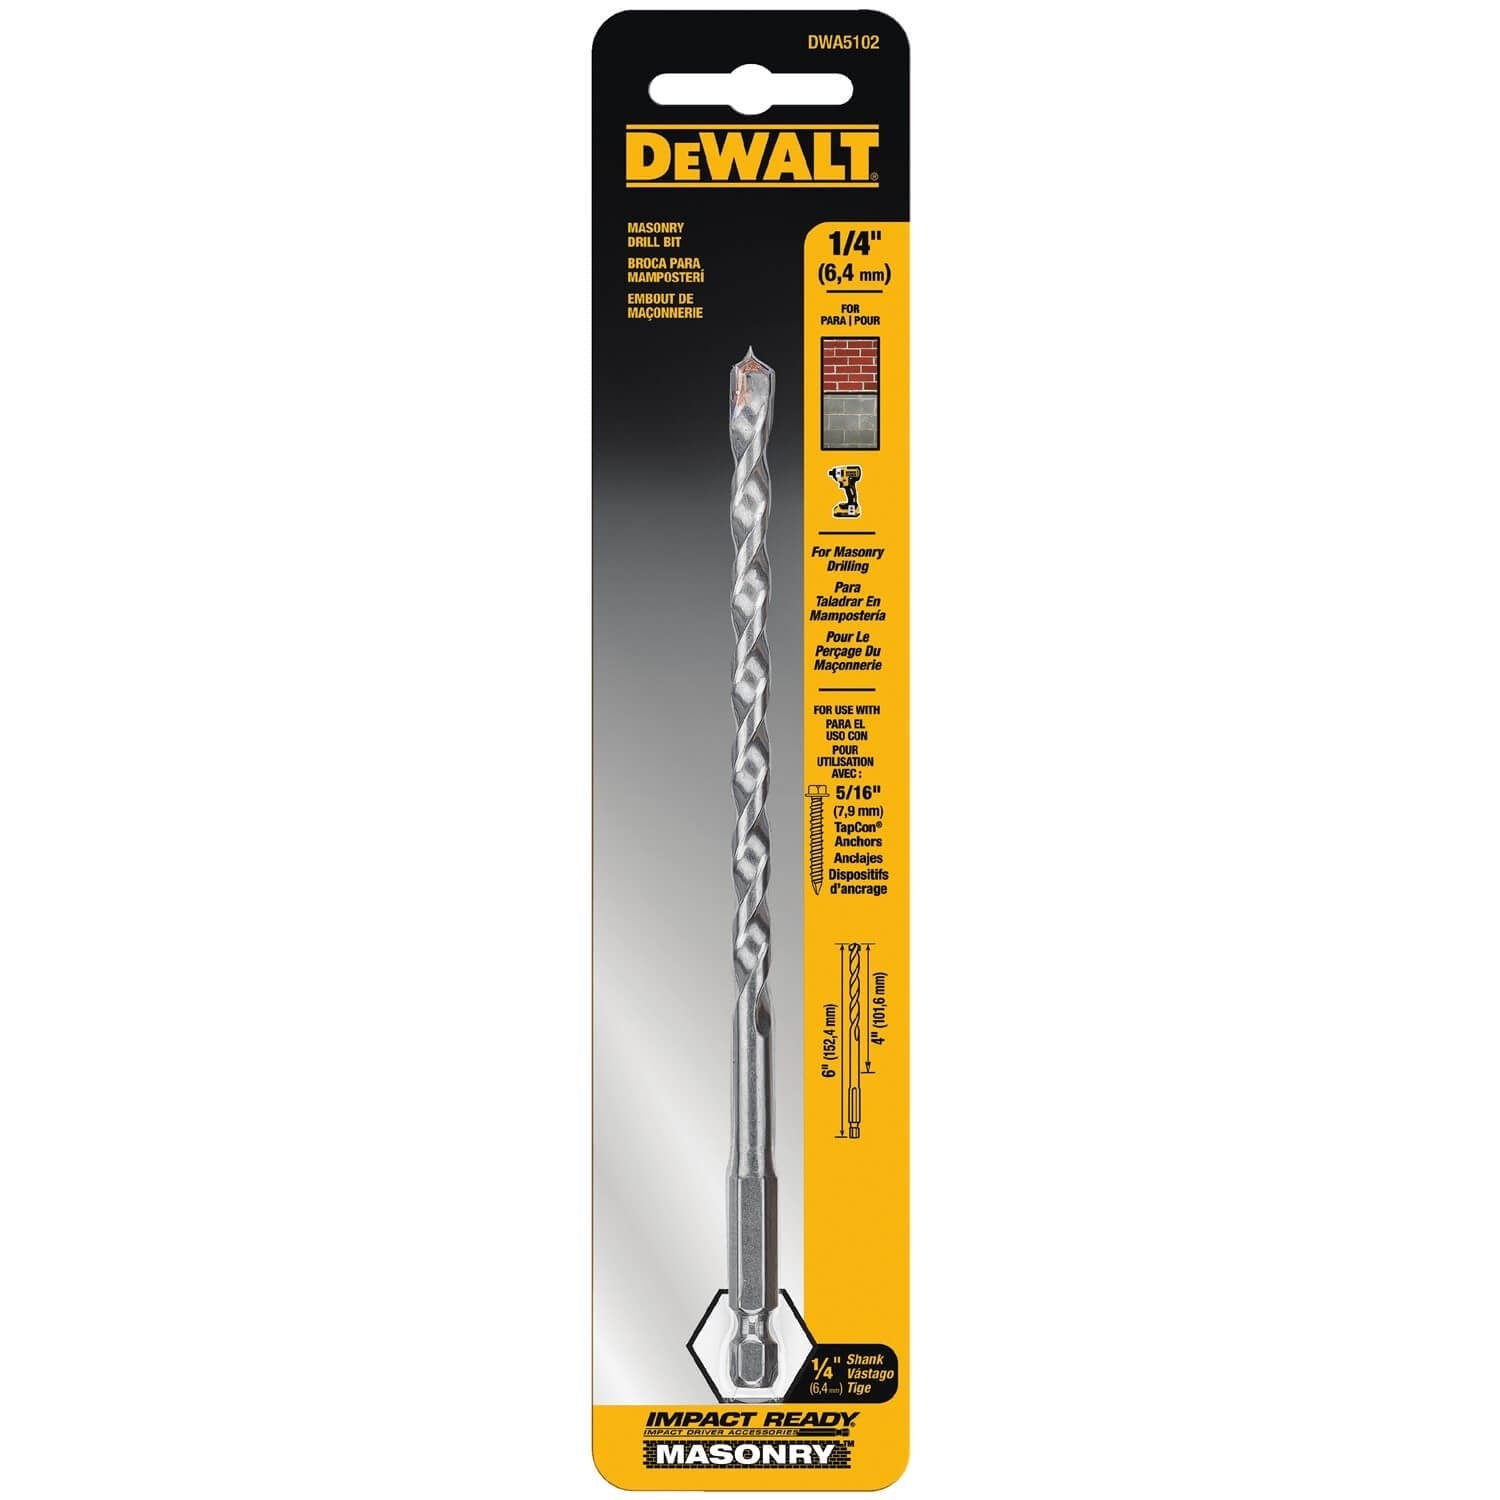 Dewalt DWA5102 - 1/4X4X6IN IMPACT READY MASONRY BIT